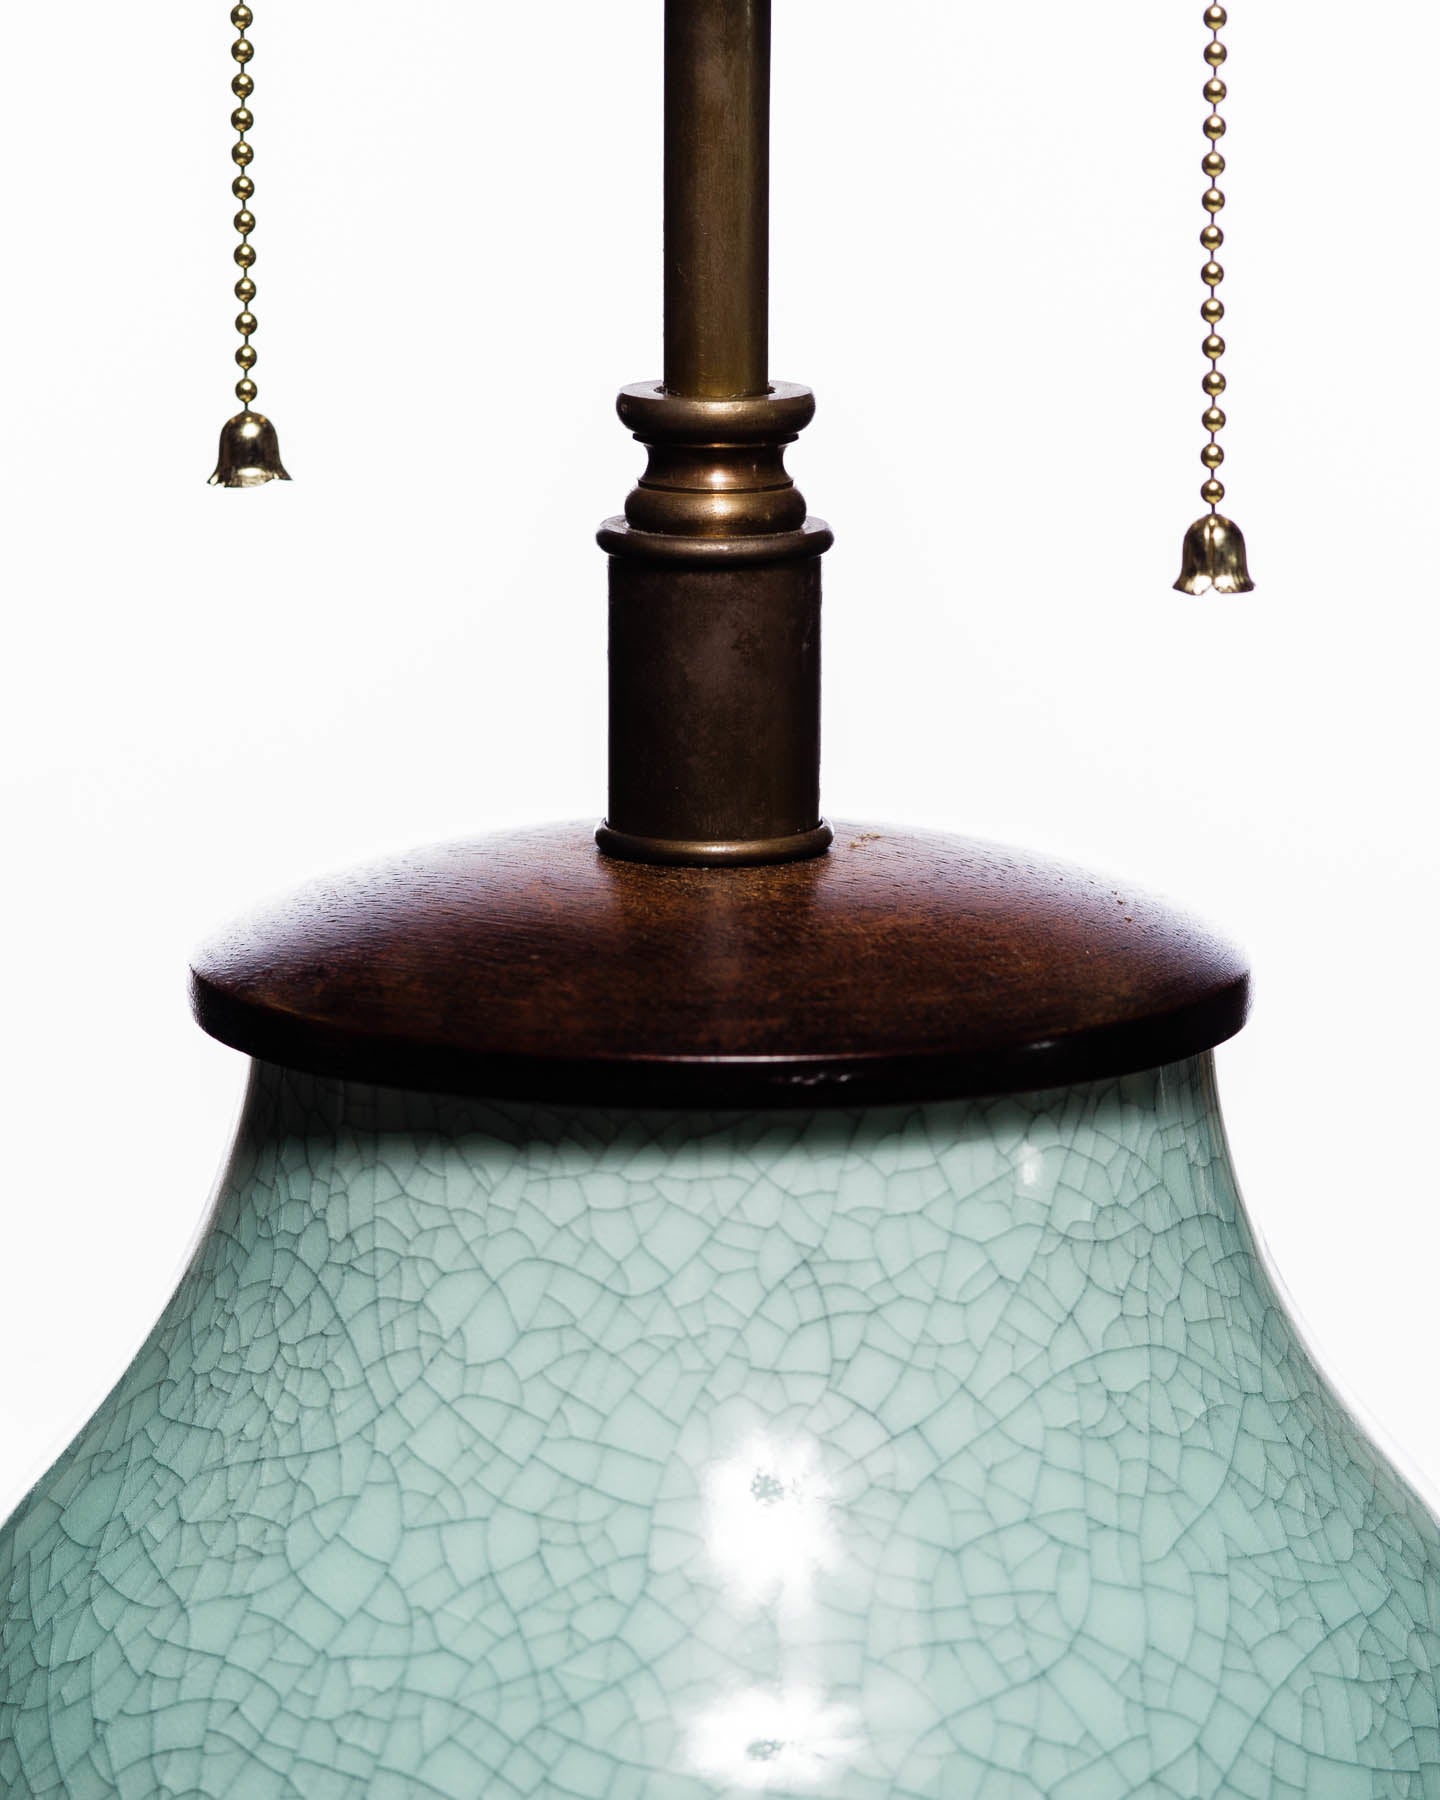 Lawrence & Scott Legacy Lagom Lantern Lamp in Aquamarine Crackle with Rosewood Base